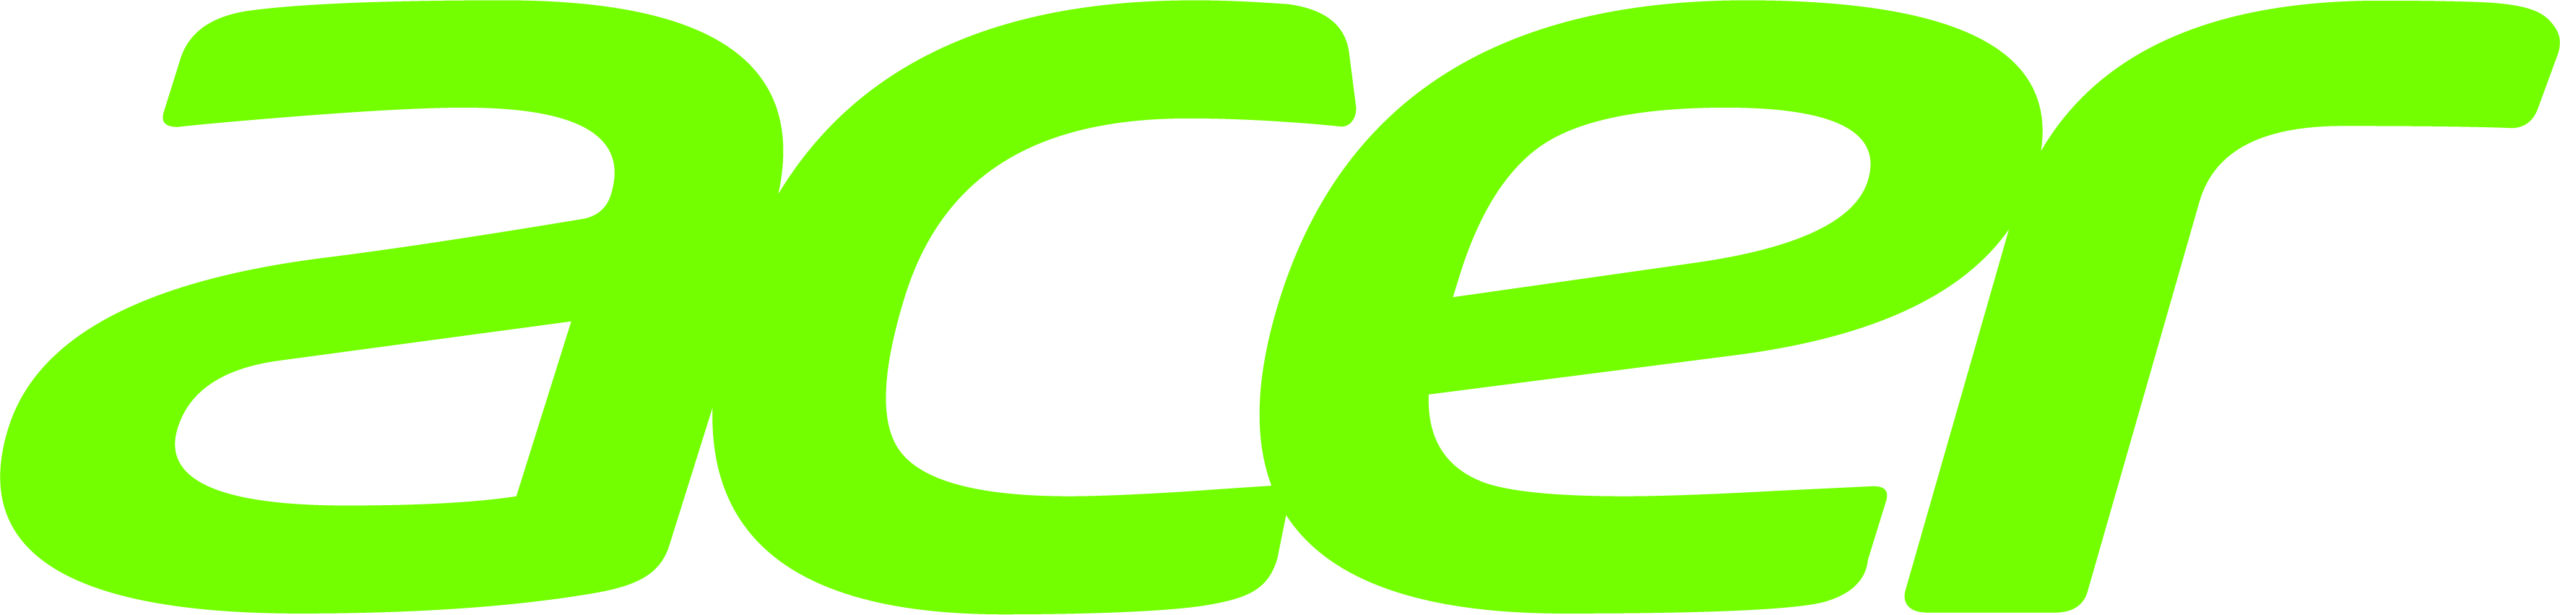 Acer anunció que ha sido incluida en el Índice de Sustentabilidad de Mercados Emergentes de Dow Jones (Dow Jones Sustainability Emerging Markets Index) 2020.